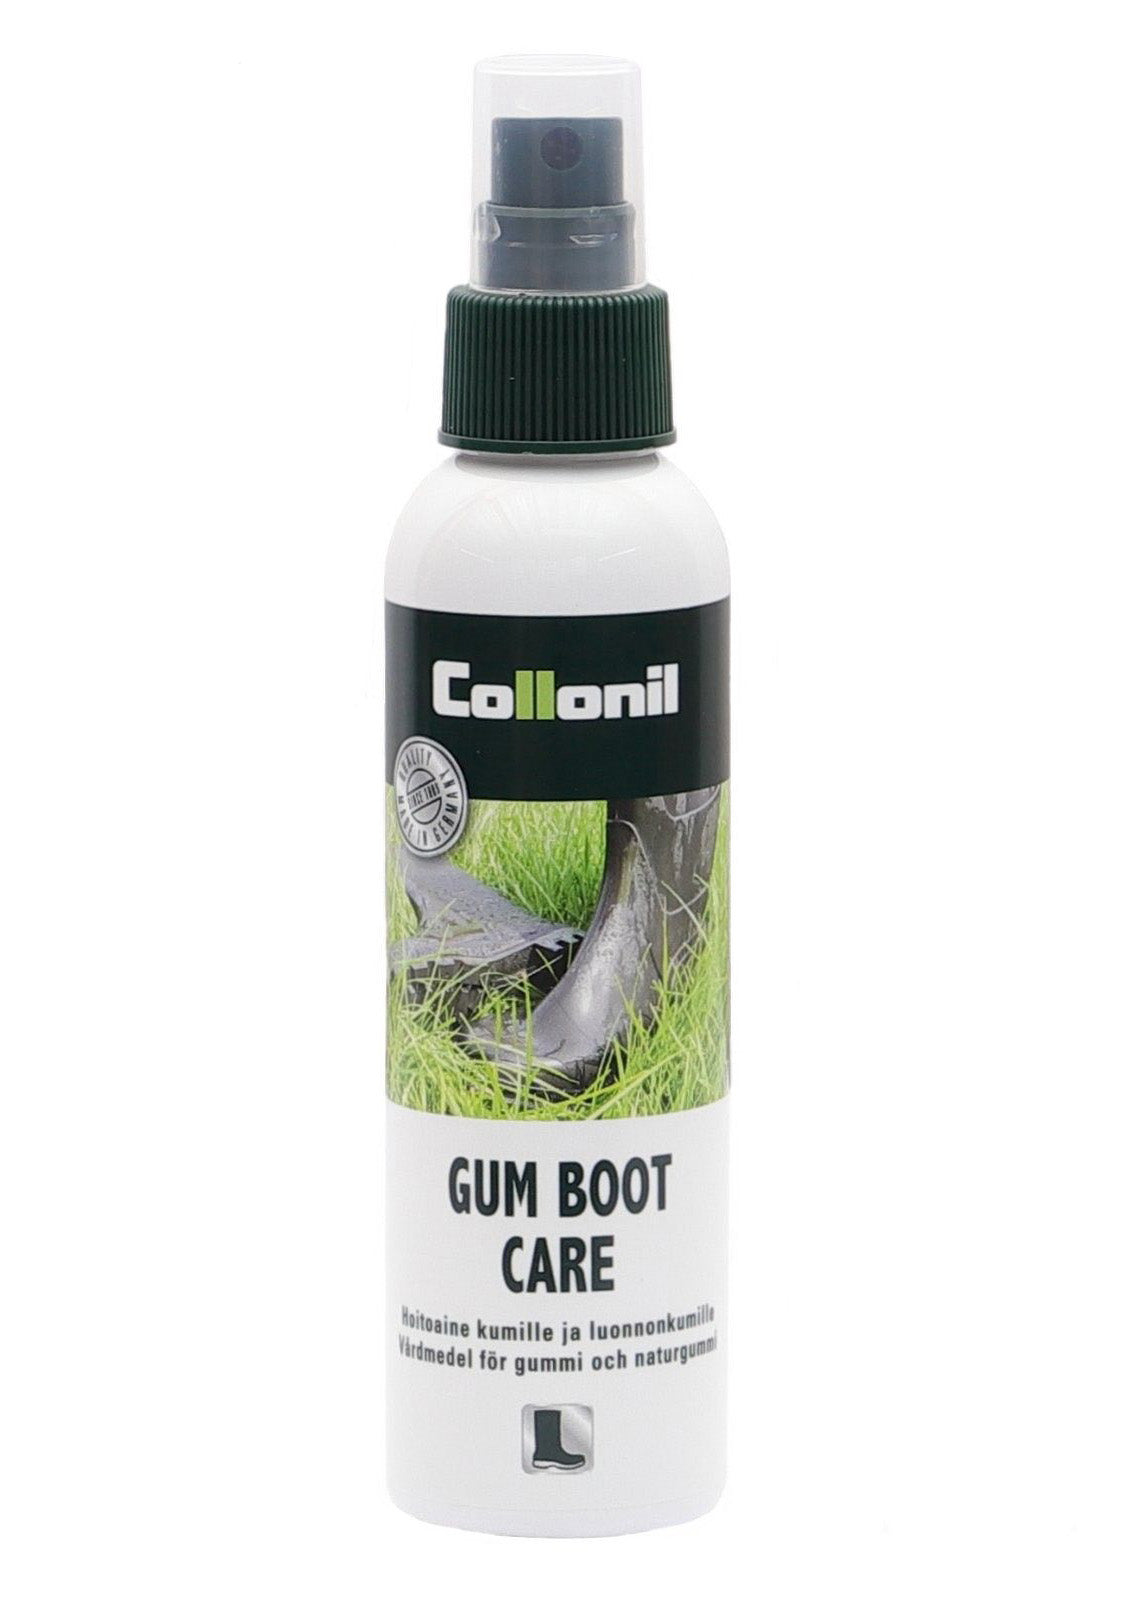 Collonil Gum Boot Care - kumisaappaiden hoitoaine, väritön, 150 ml